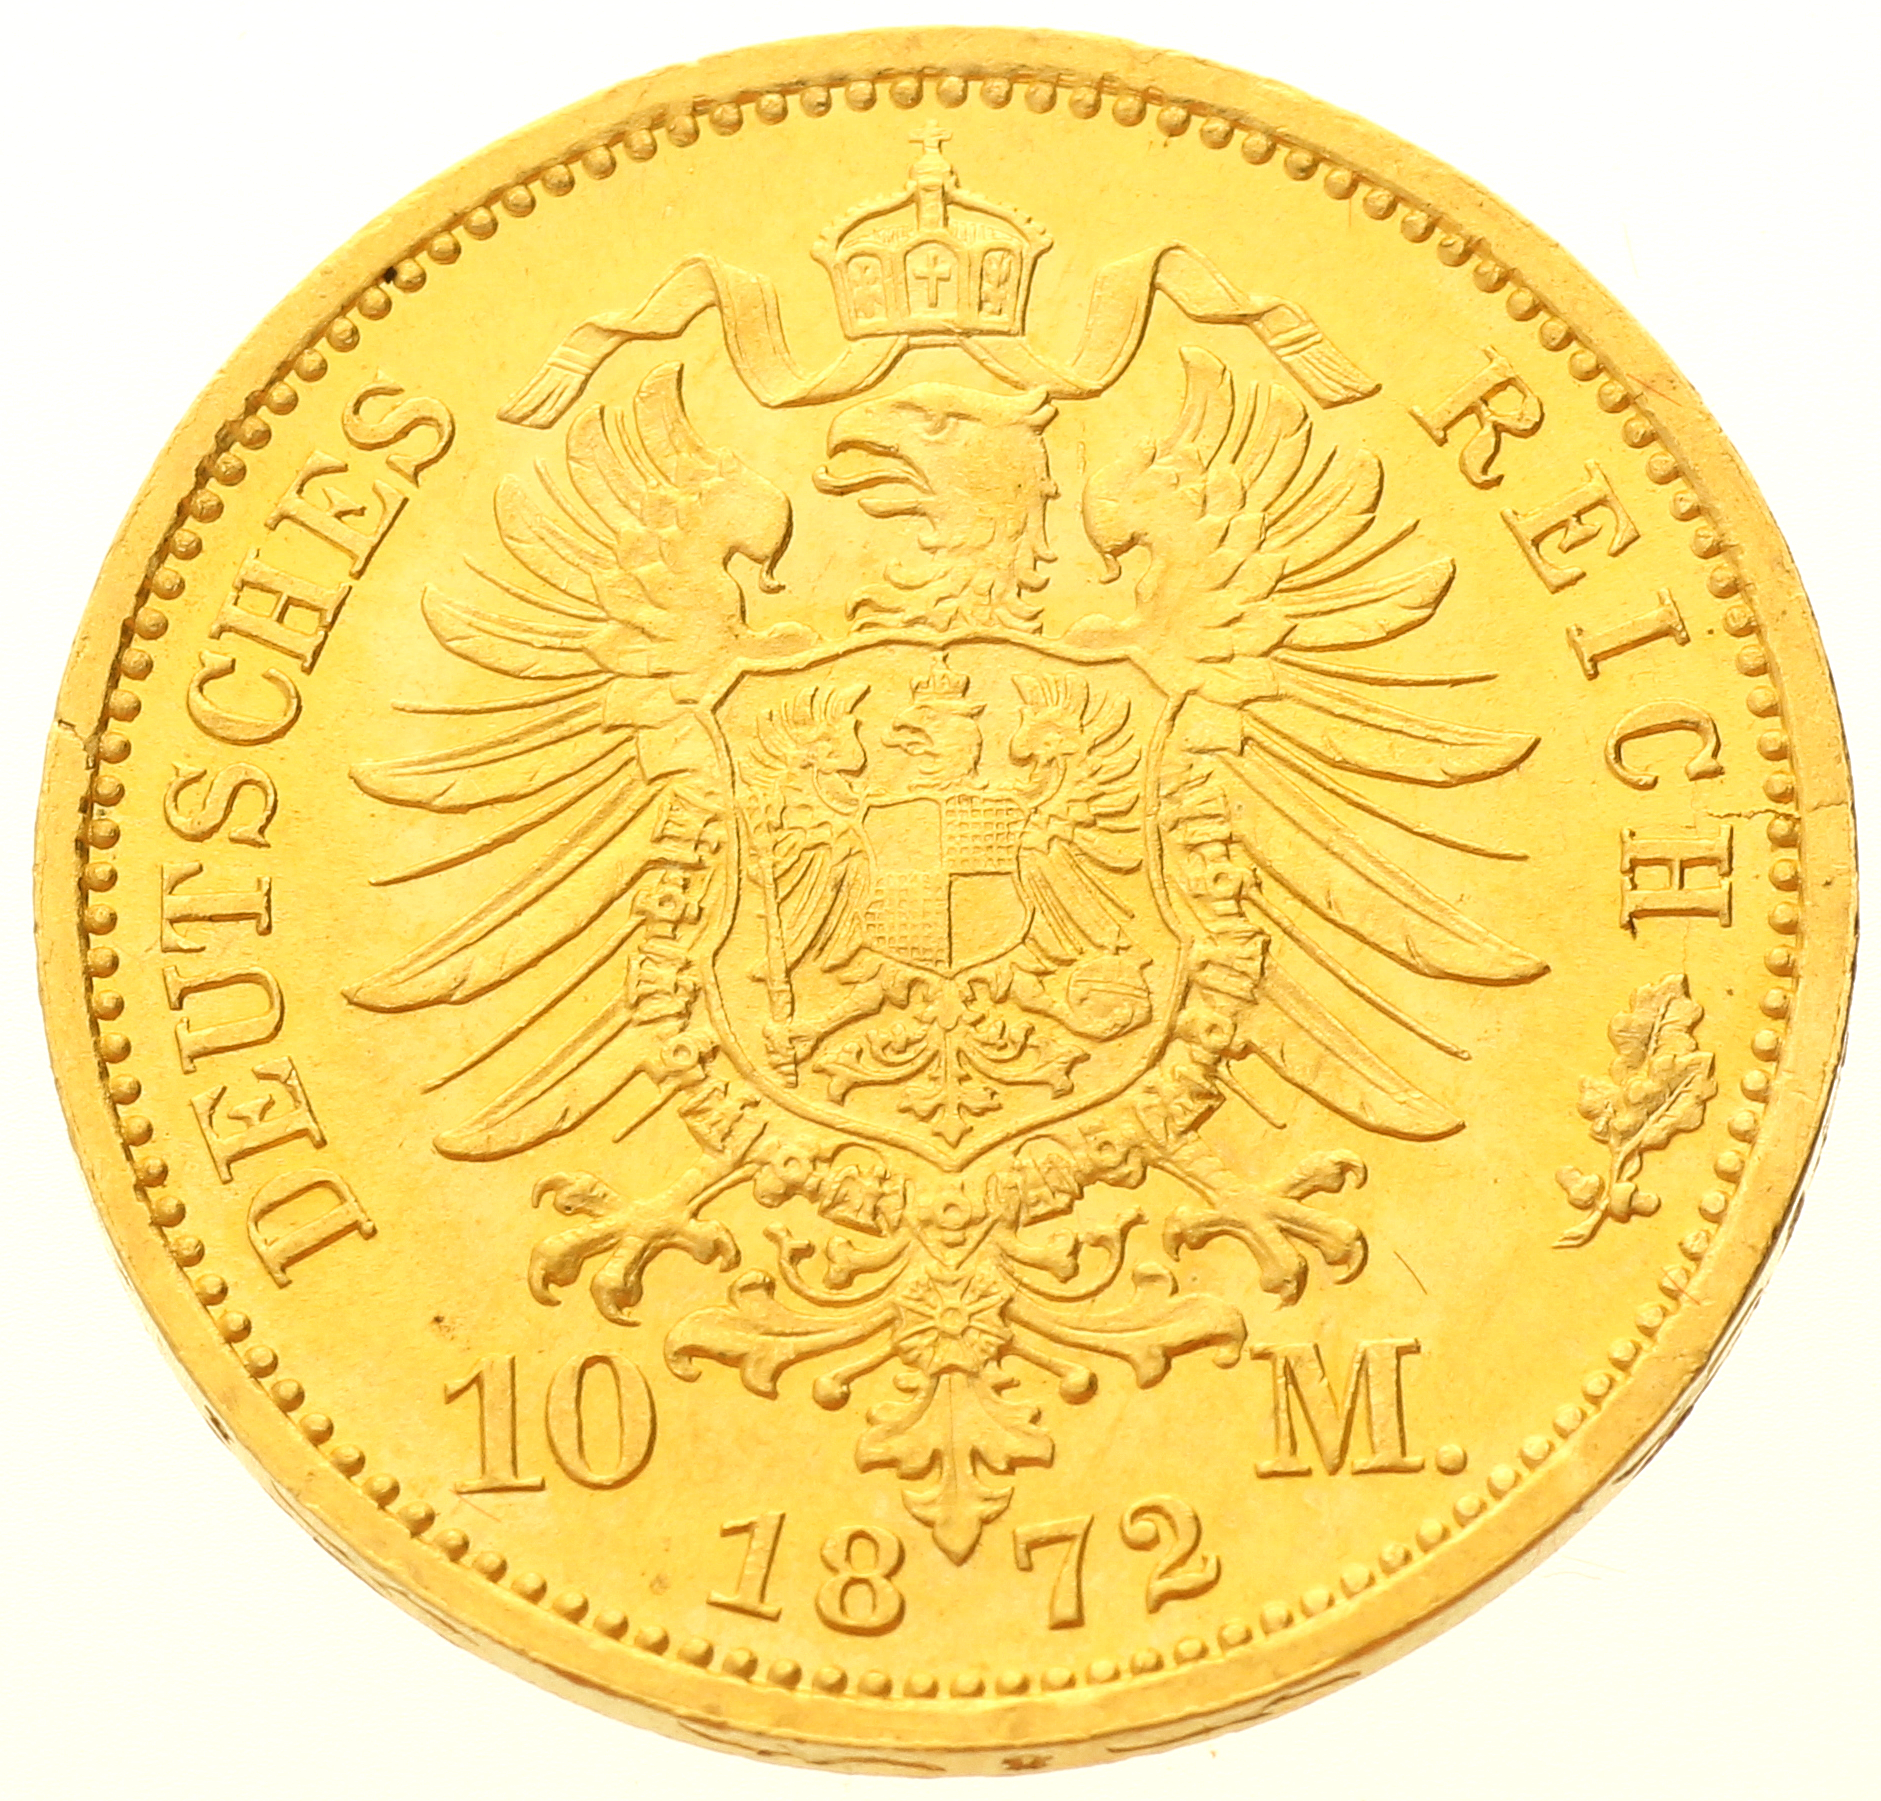 Germany - Prussia - 10 mark - 1872 - A - Wilhelm I 